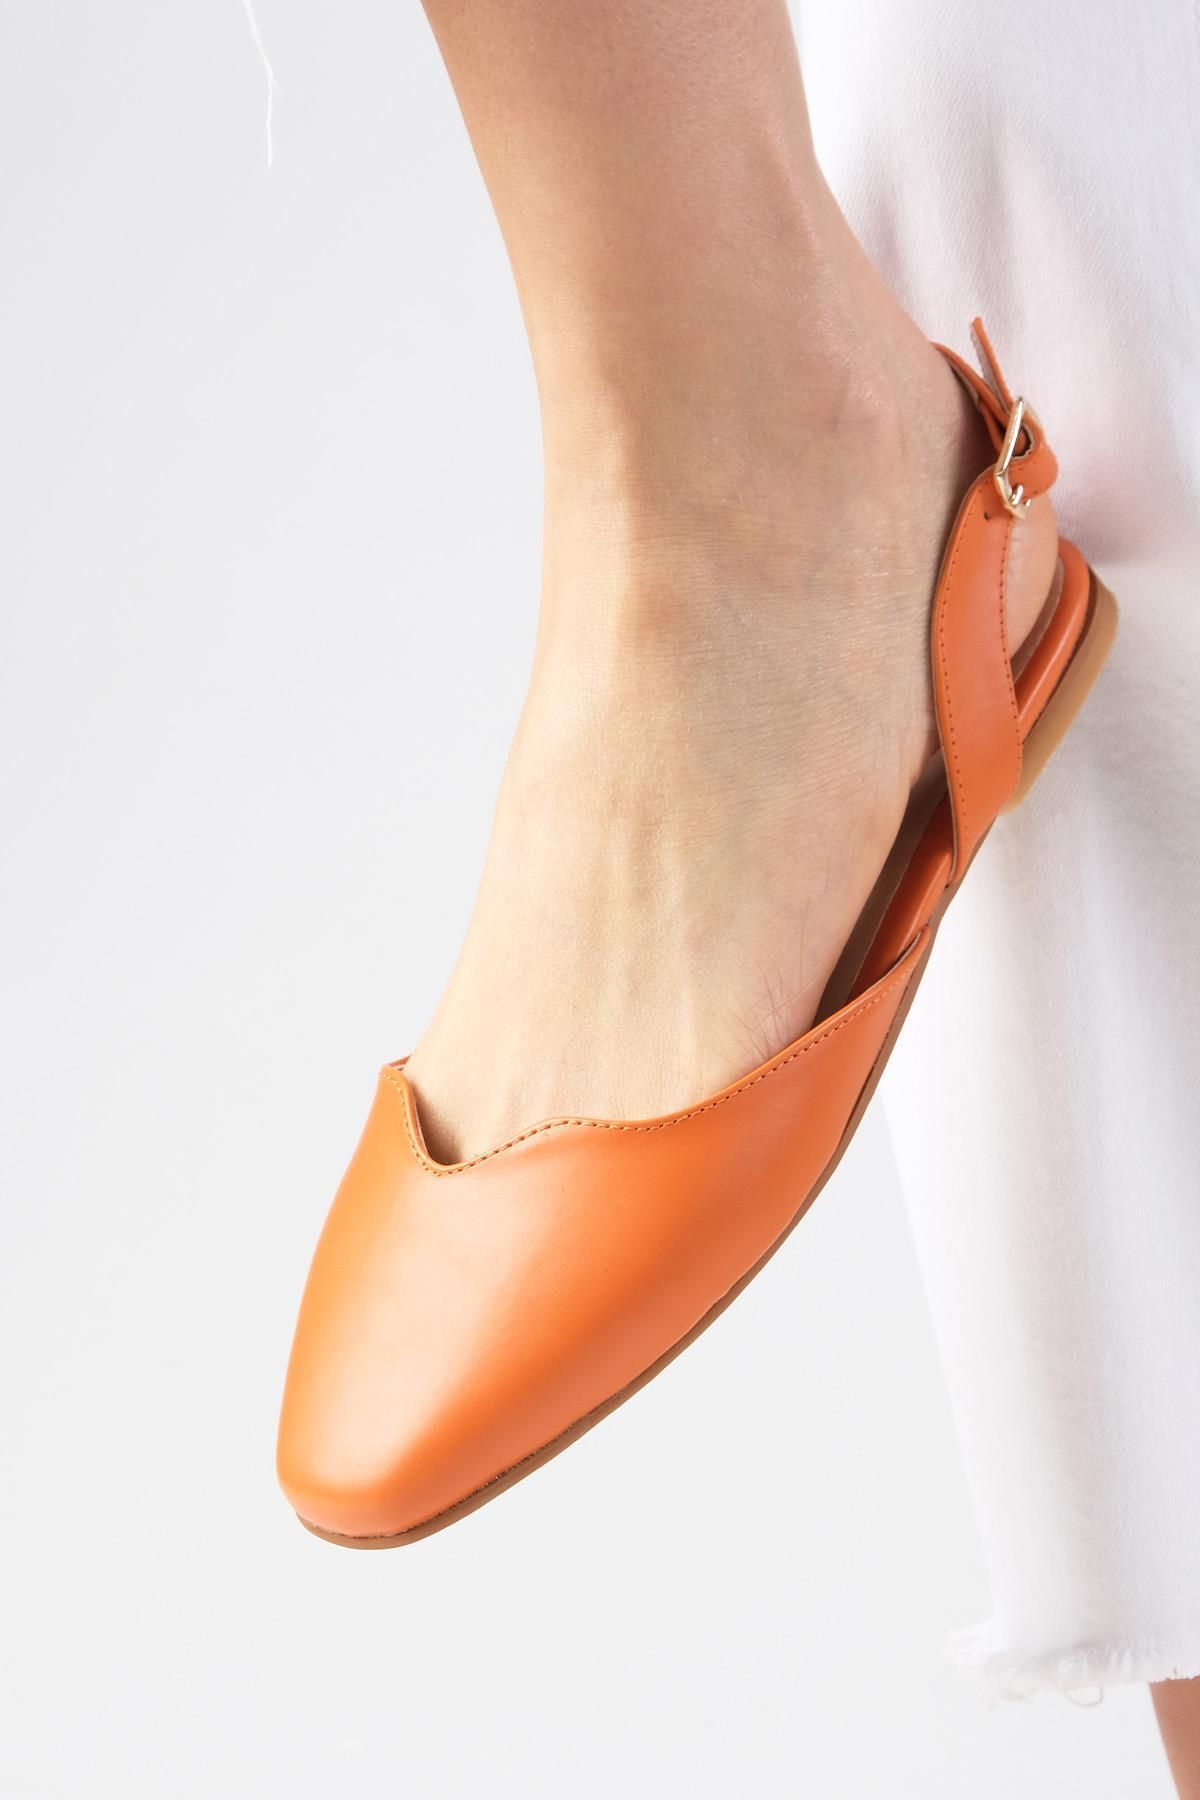 Mio Gusto Mayra Turuncu Renk Arkası Açık Küt Burunlu Kadın Babet Ayakkabı